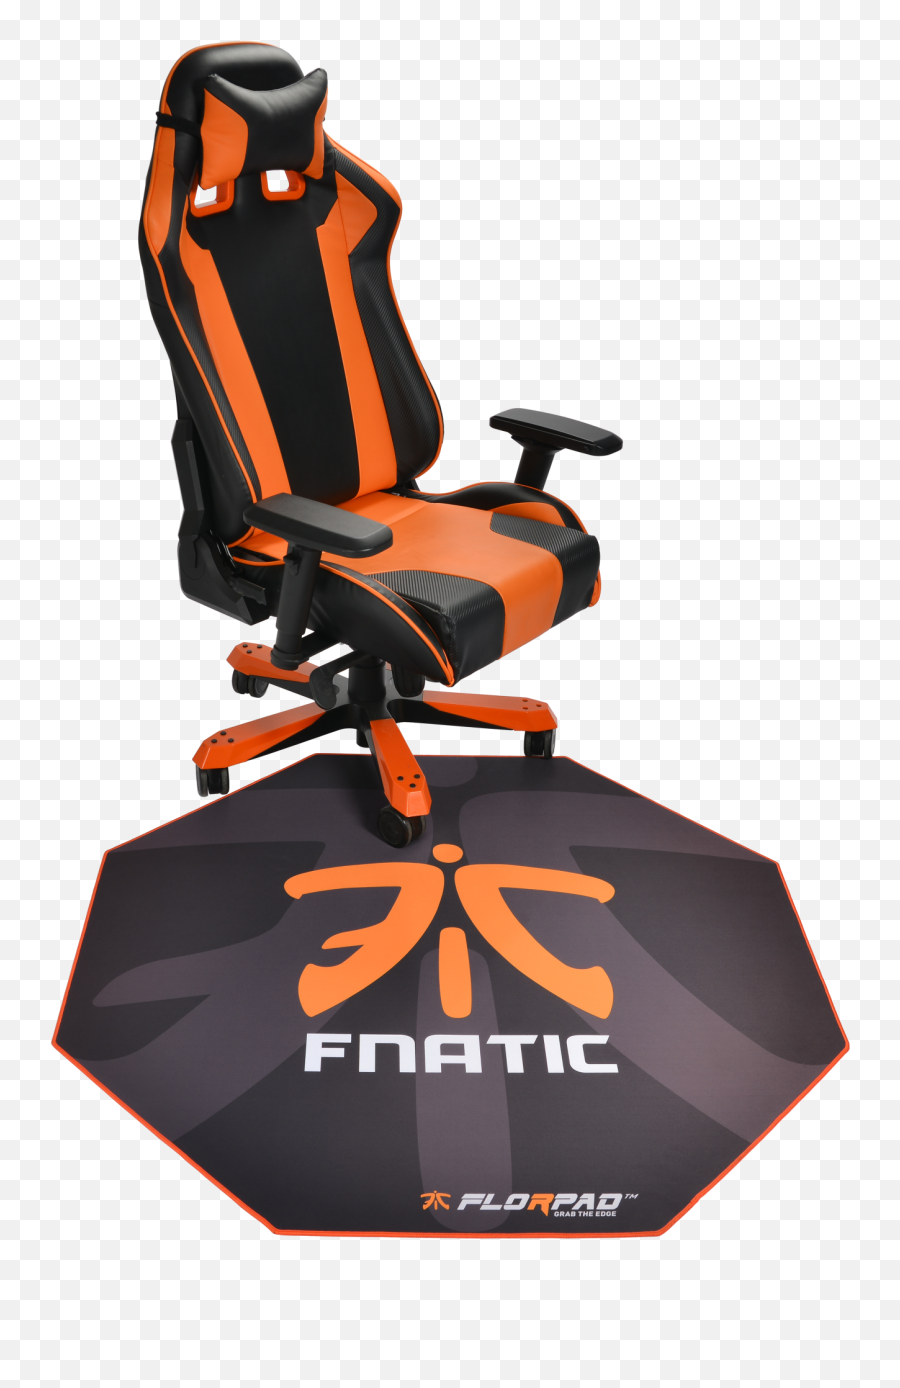 Download Florpad Fnatic Gamer - Fnatic Gaming Chair Png,Fnatic Logo